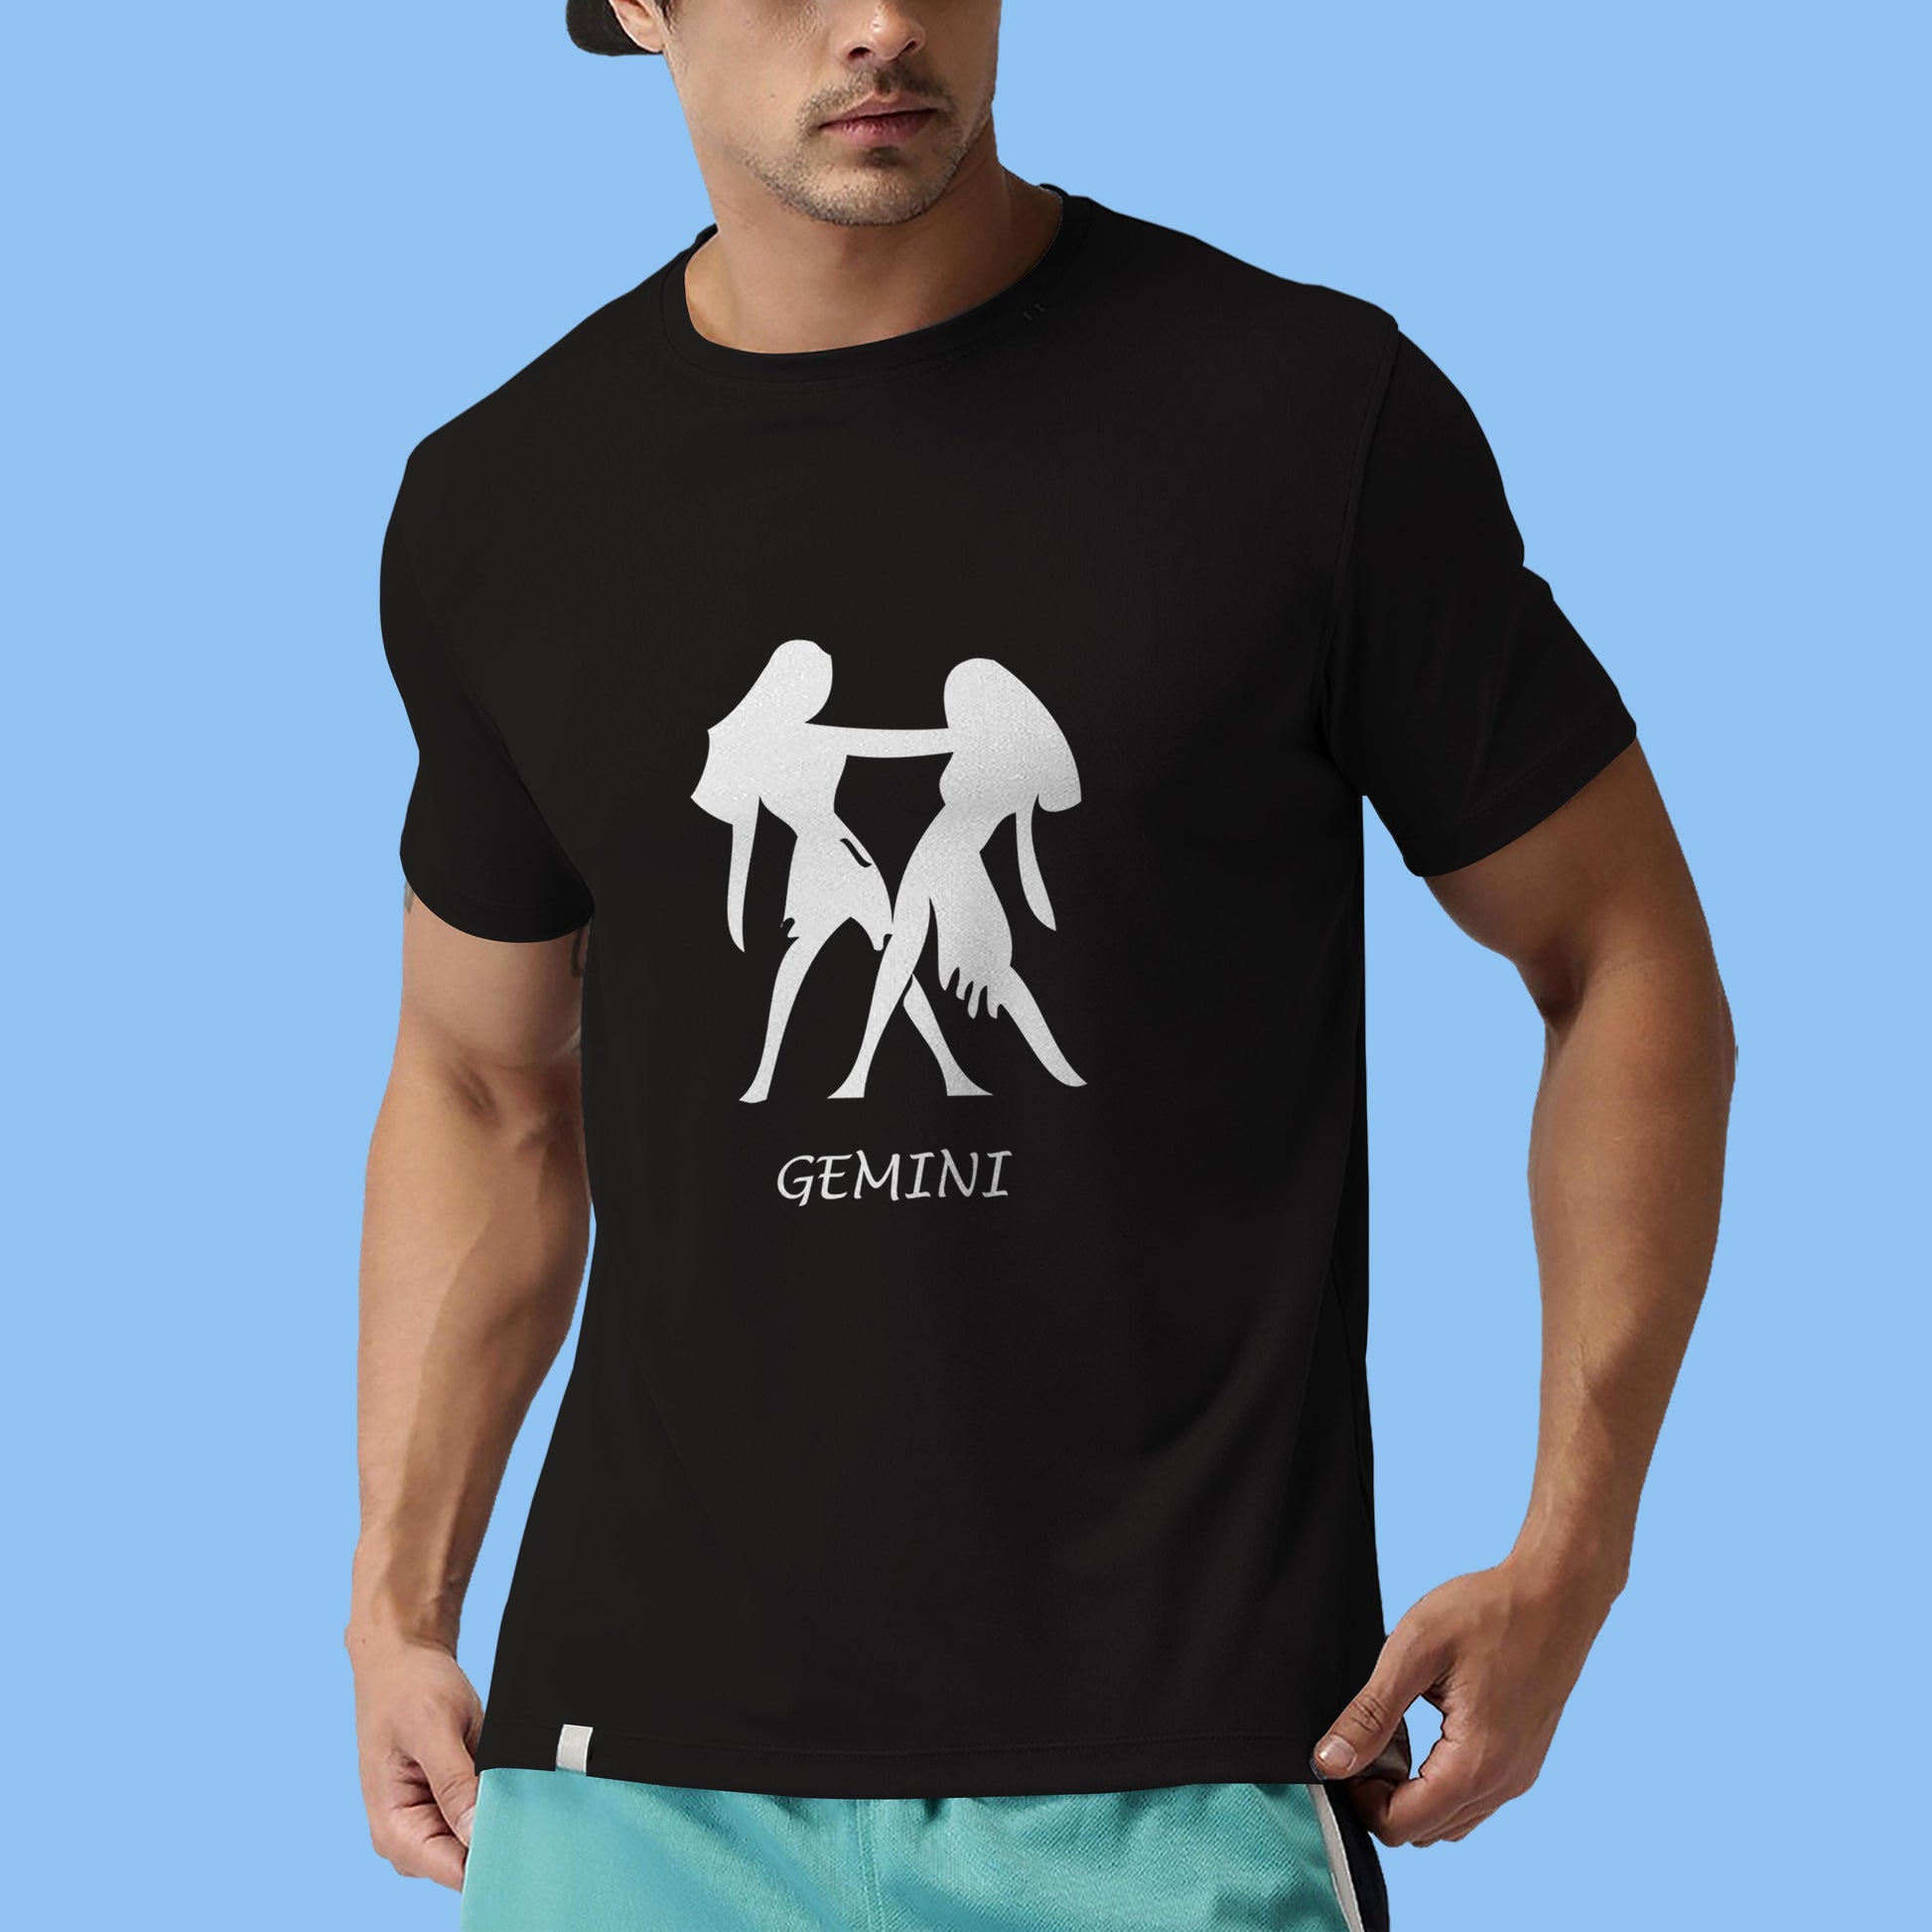 Gemini zodiac sign tshirt, Personality tshirt, Astrology tshirt- Black